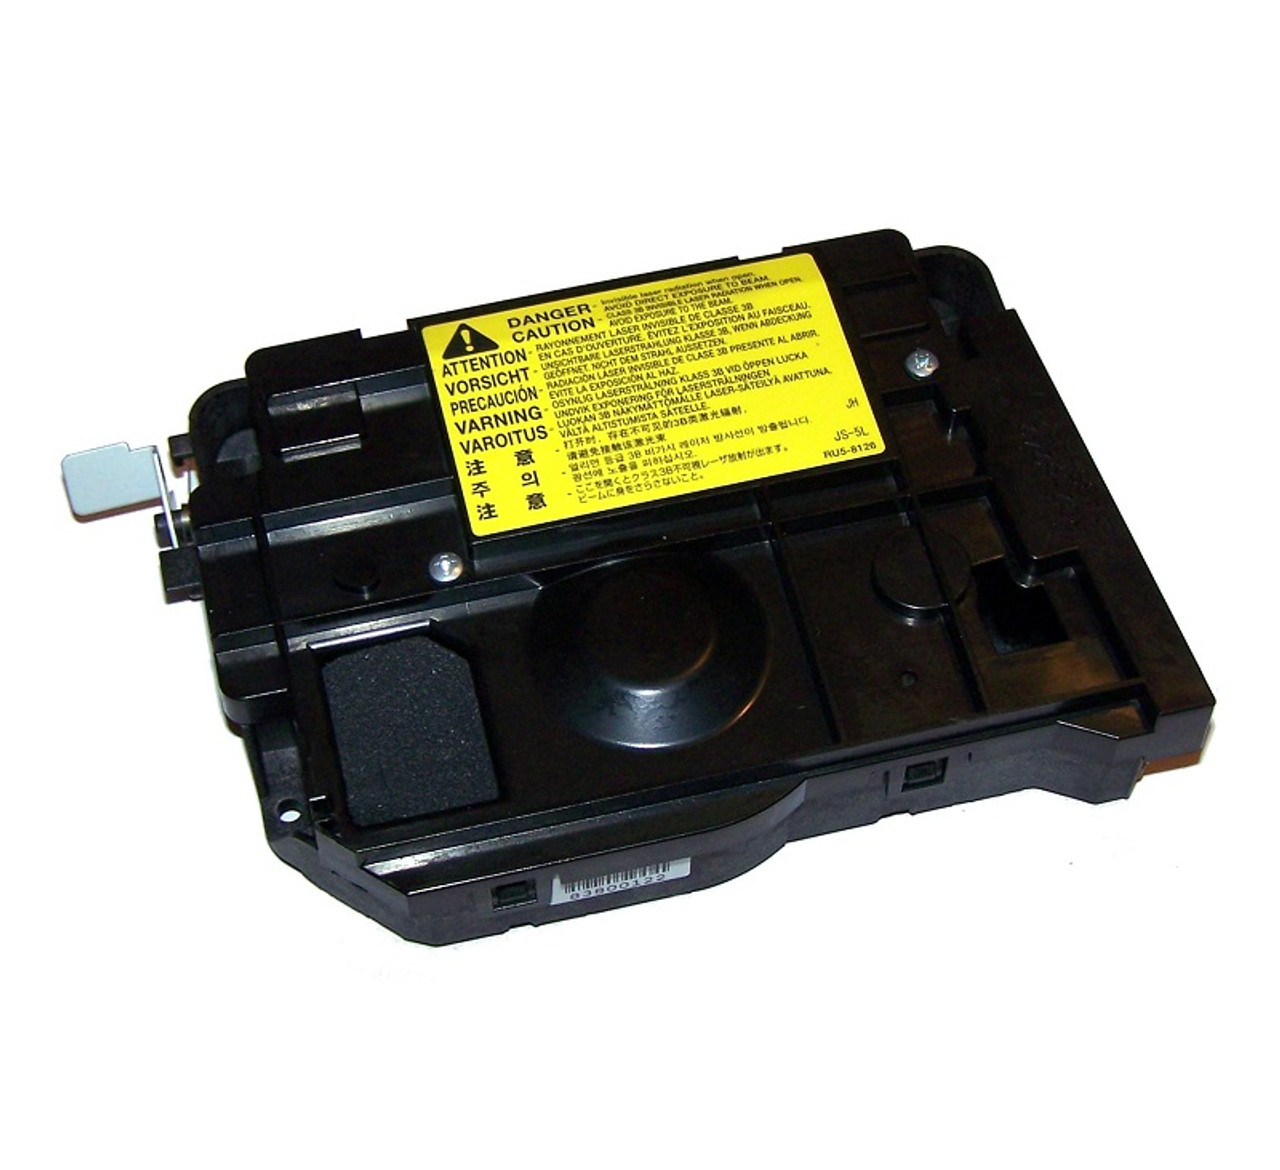 RM1-5660-000CN - HP Laser Scanner for Color LaserJet CP4025 / CP4525 / CM4540 Series